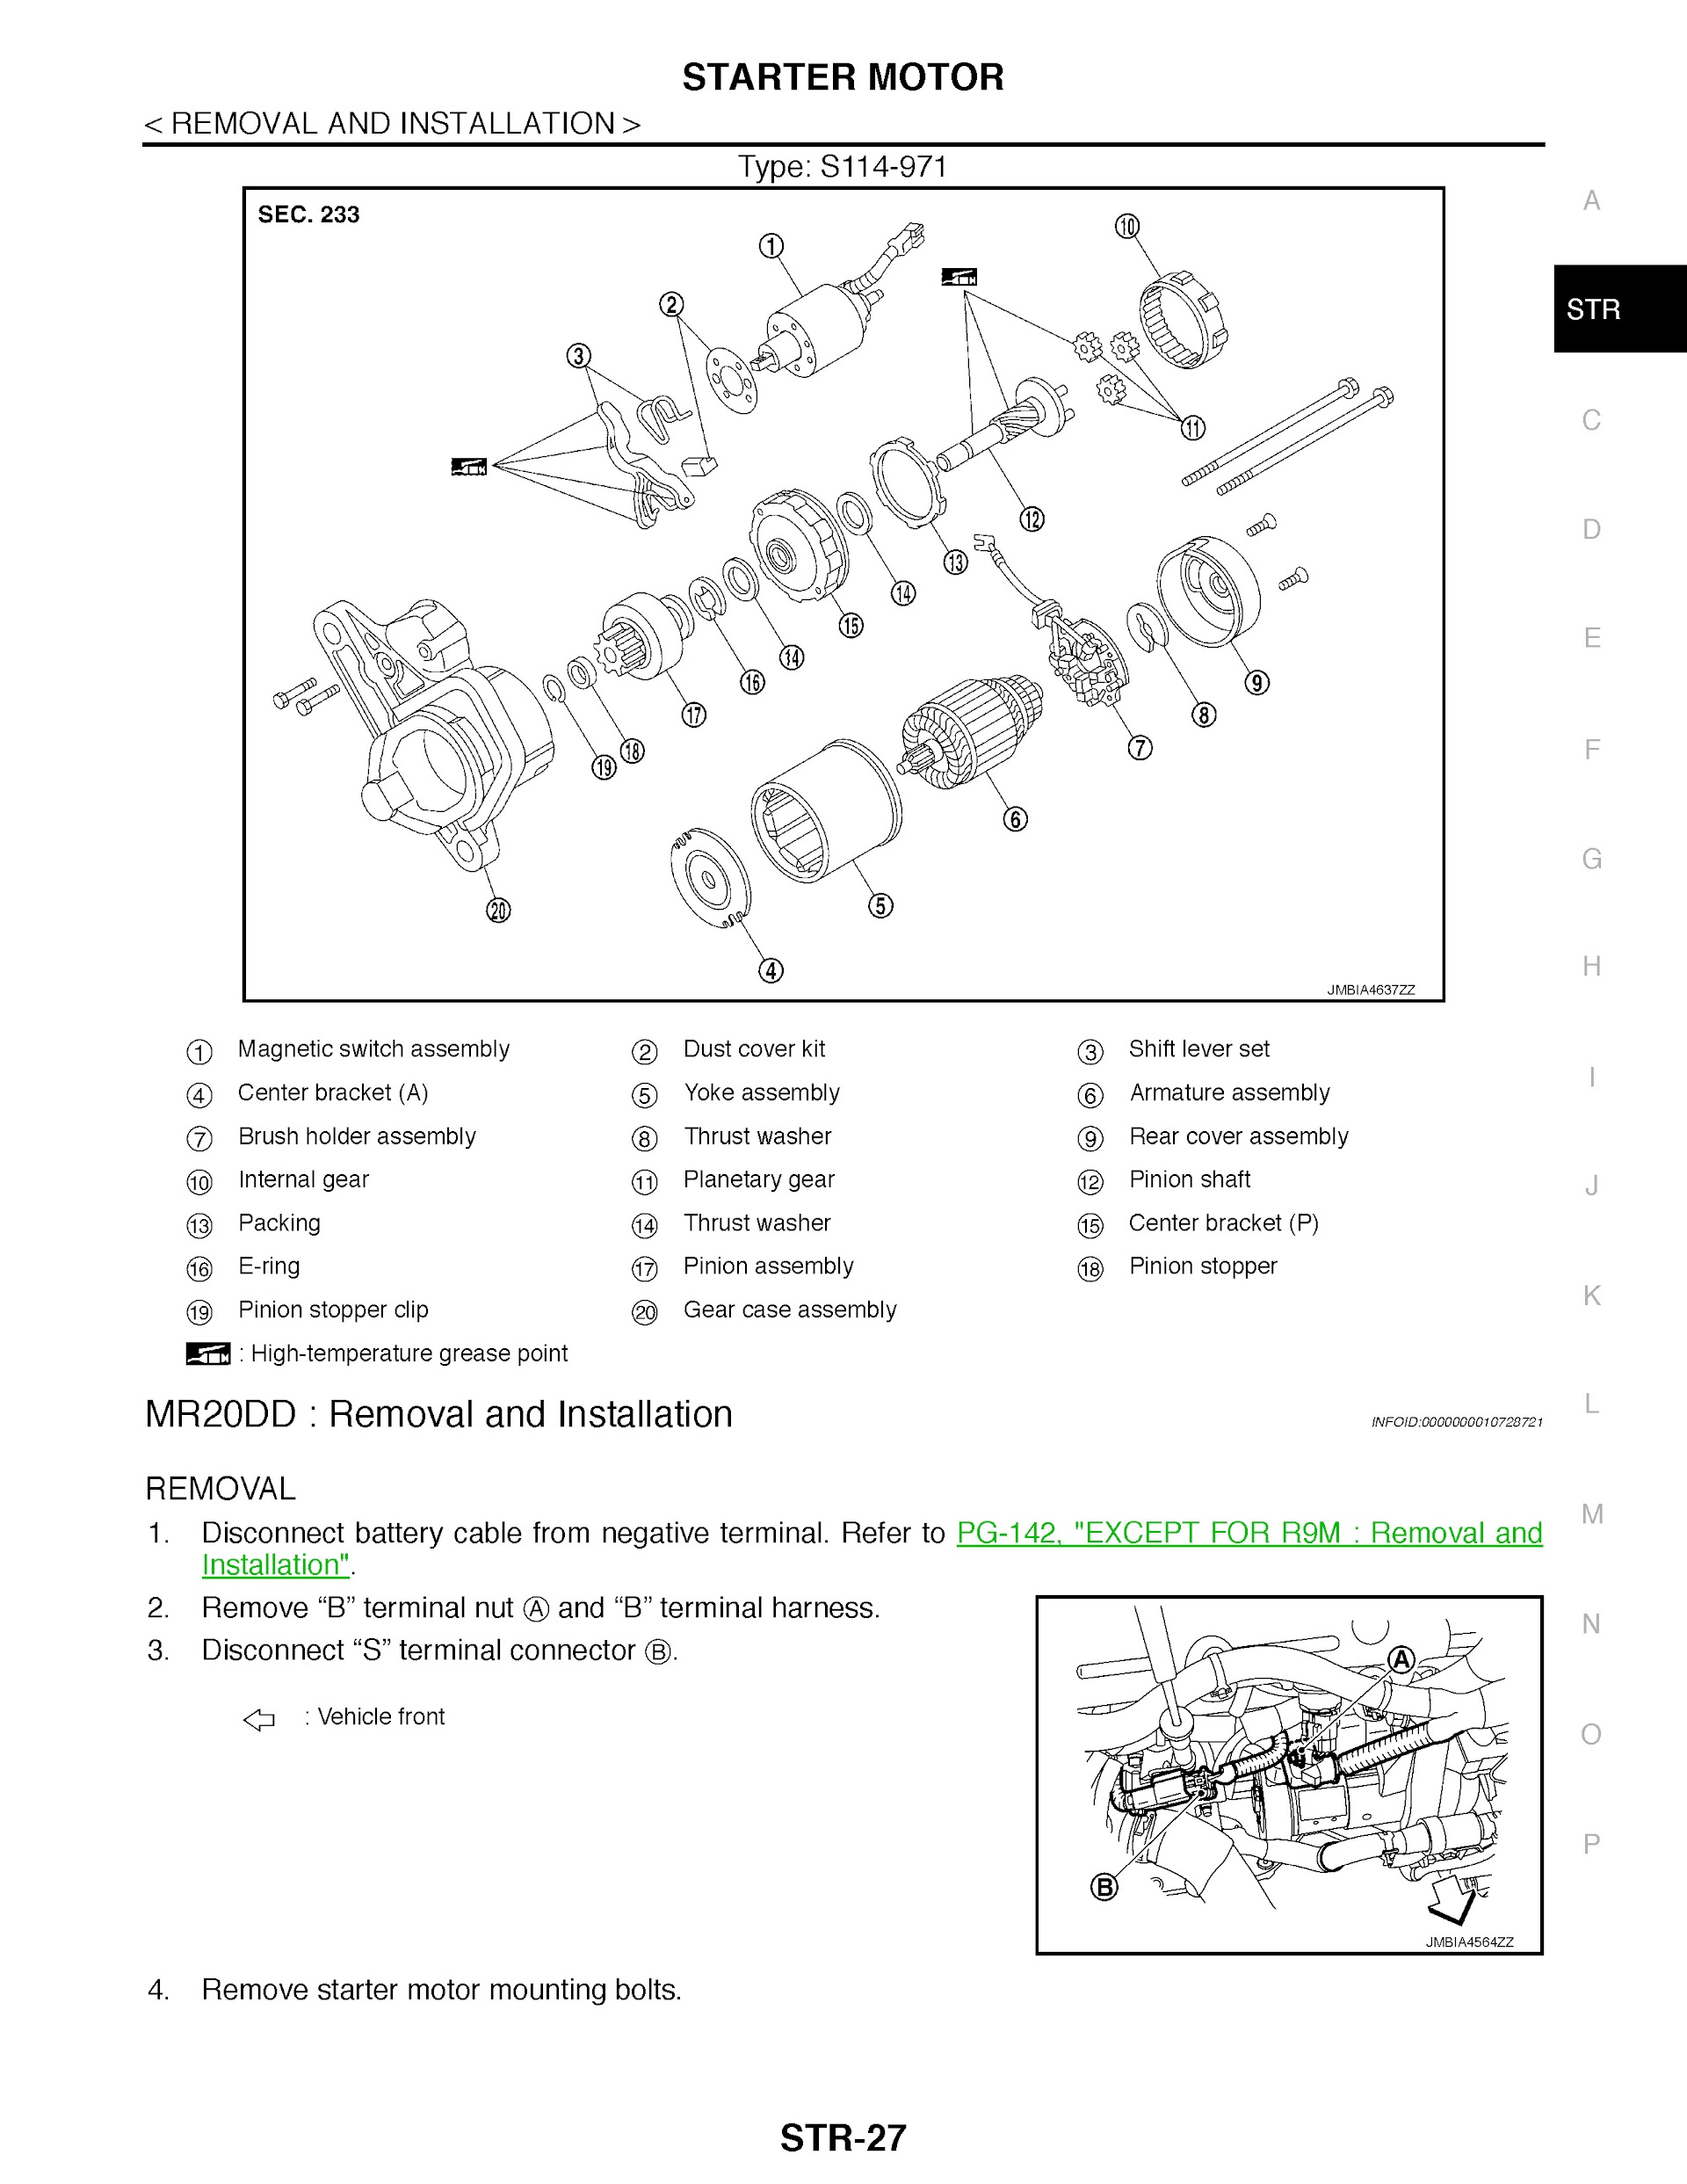 2020 Nissan X-Trail Repair Manual, Starter Motor